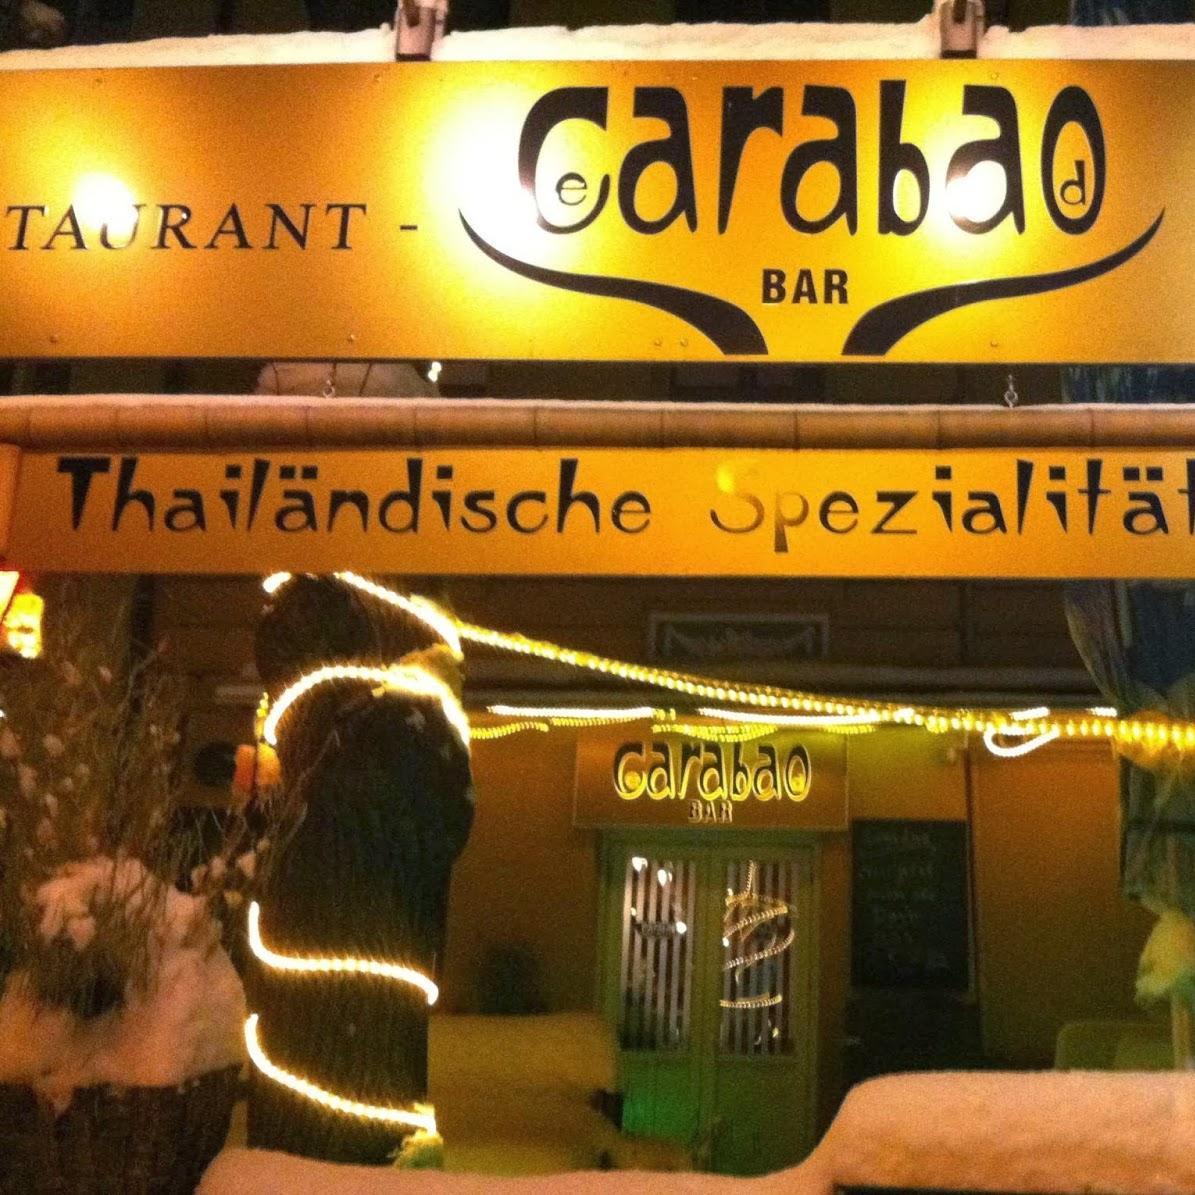 Restaurant "Carabao" in Berlin